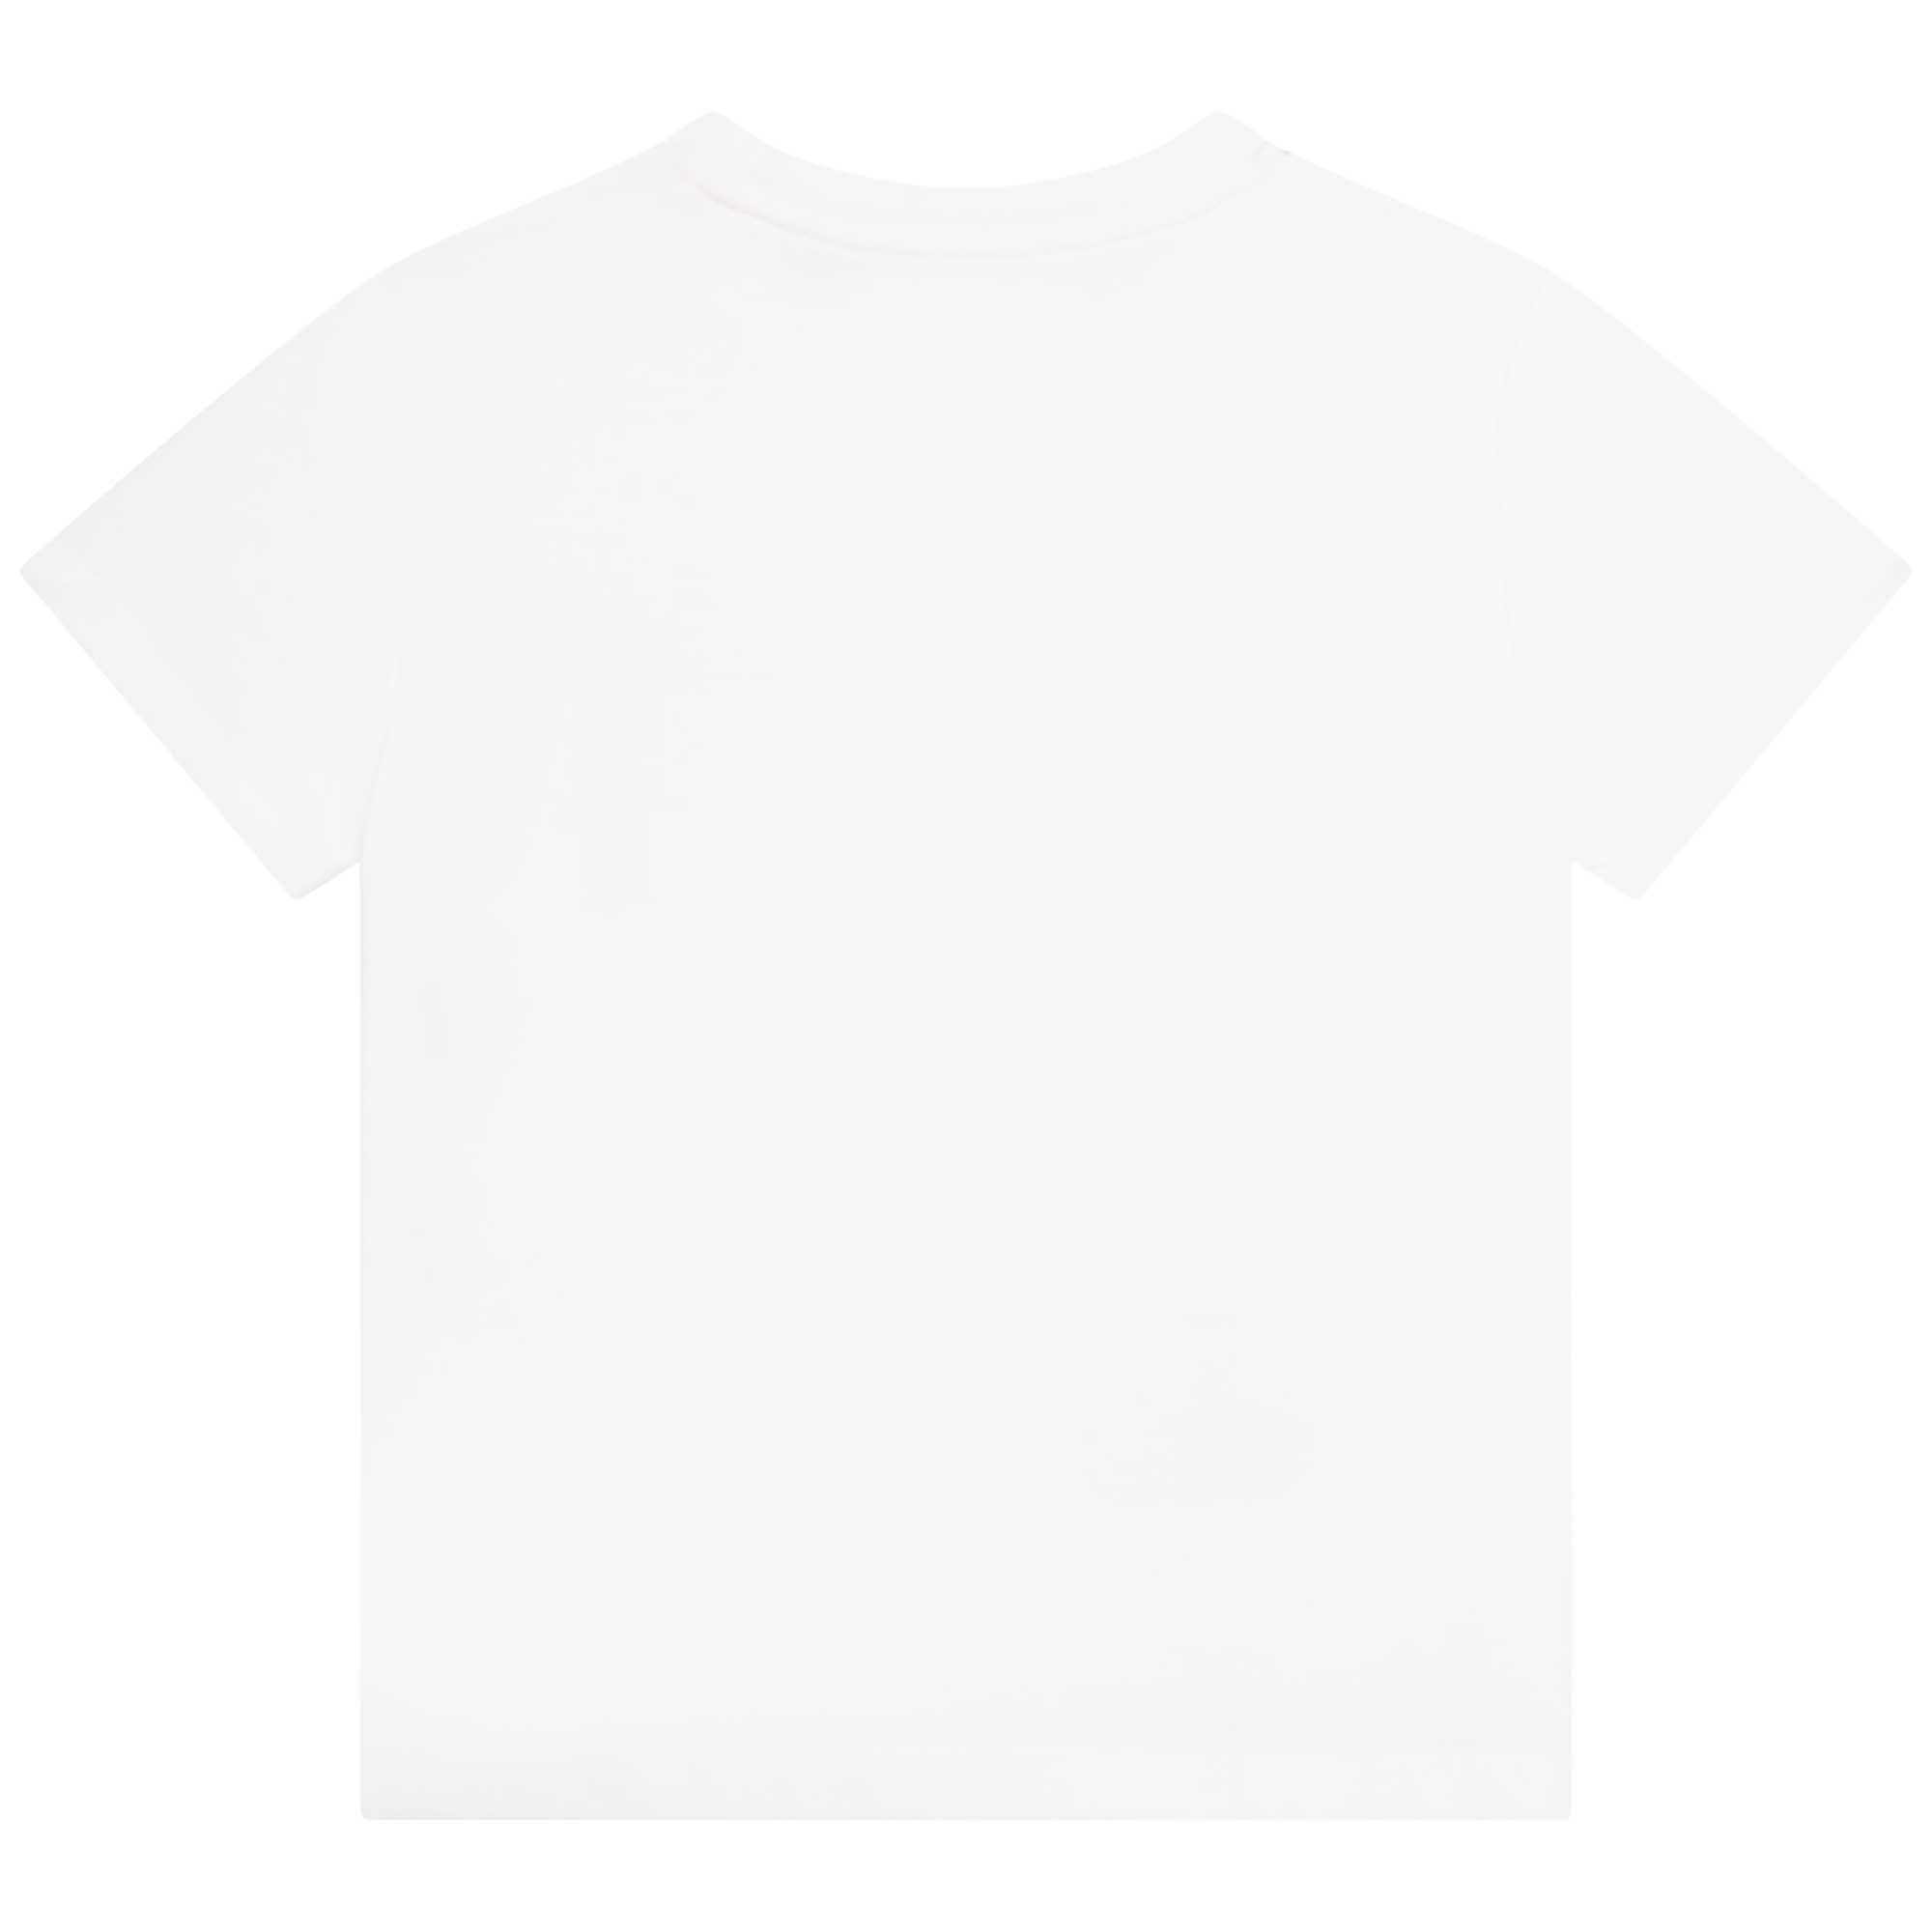 Camiseta estampada de algodón MARC JACOBS para NIÑA